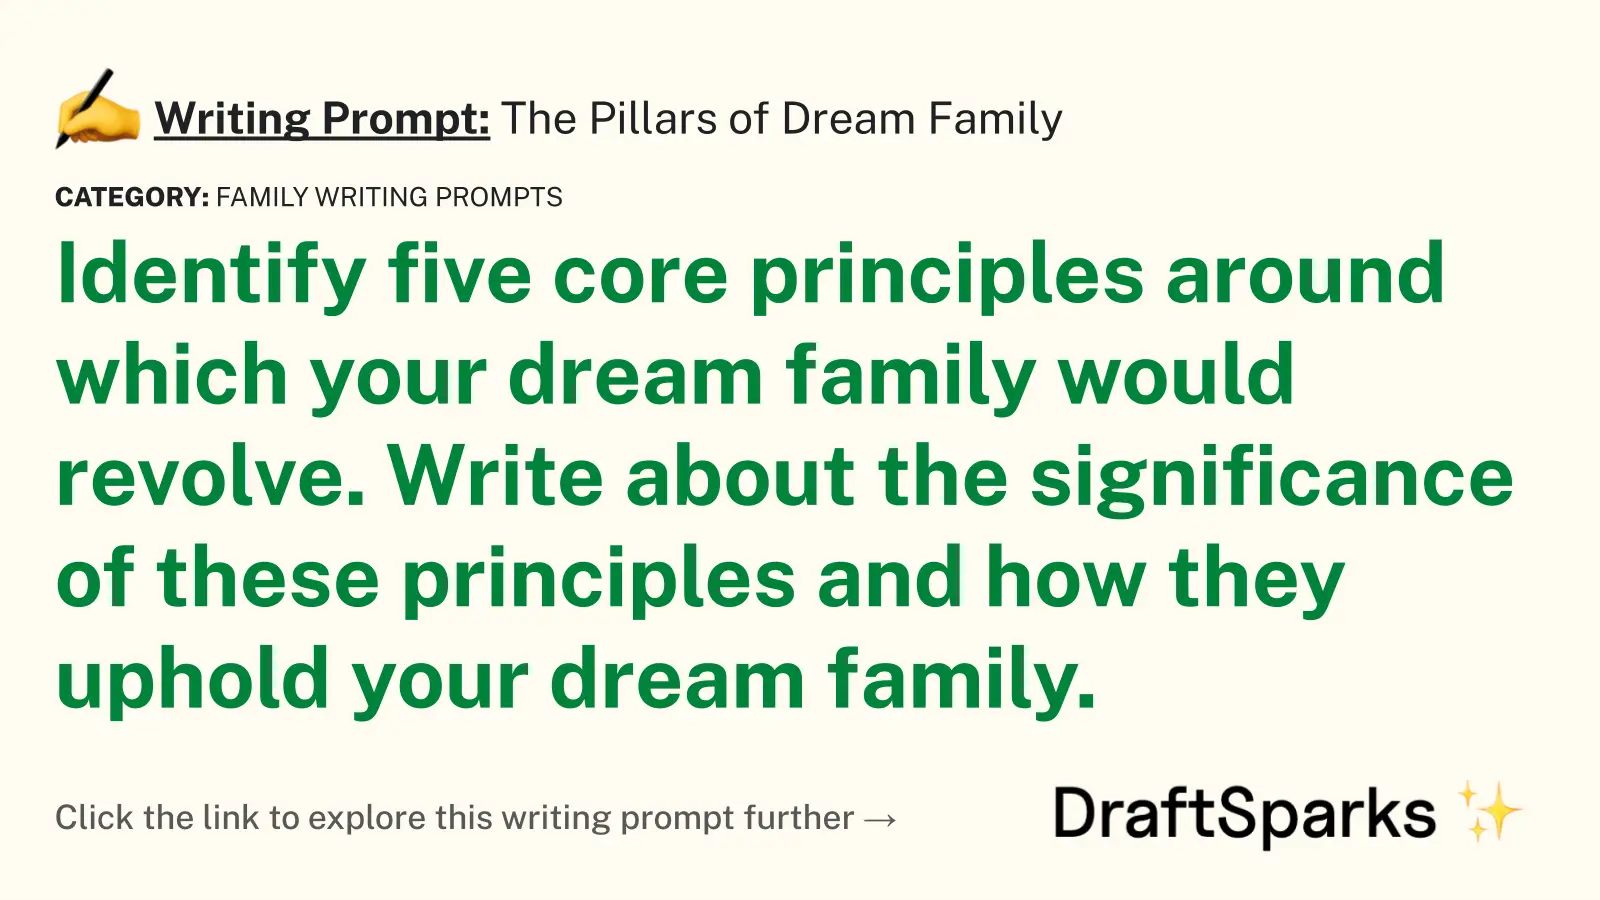 The Pillars of Dream Family